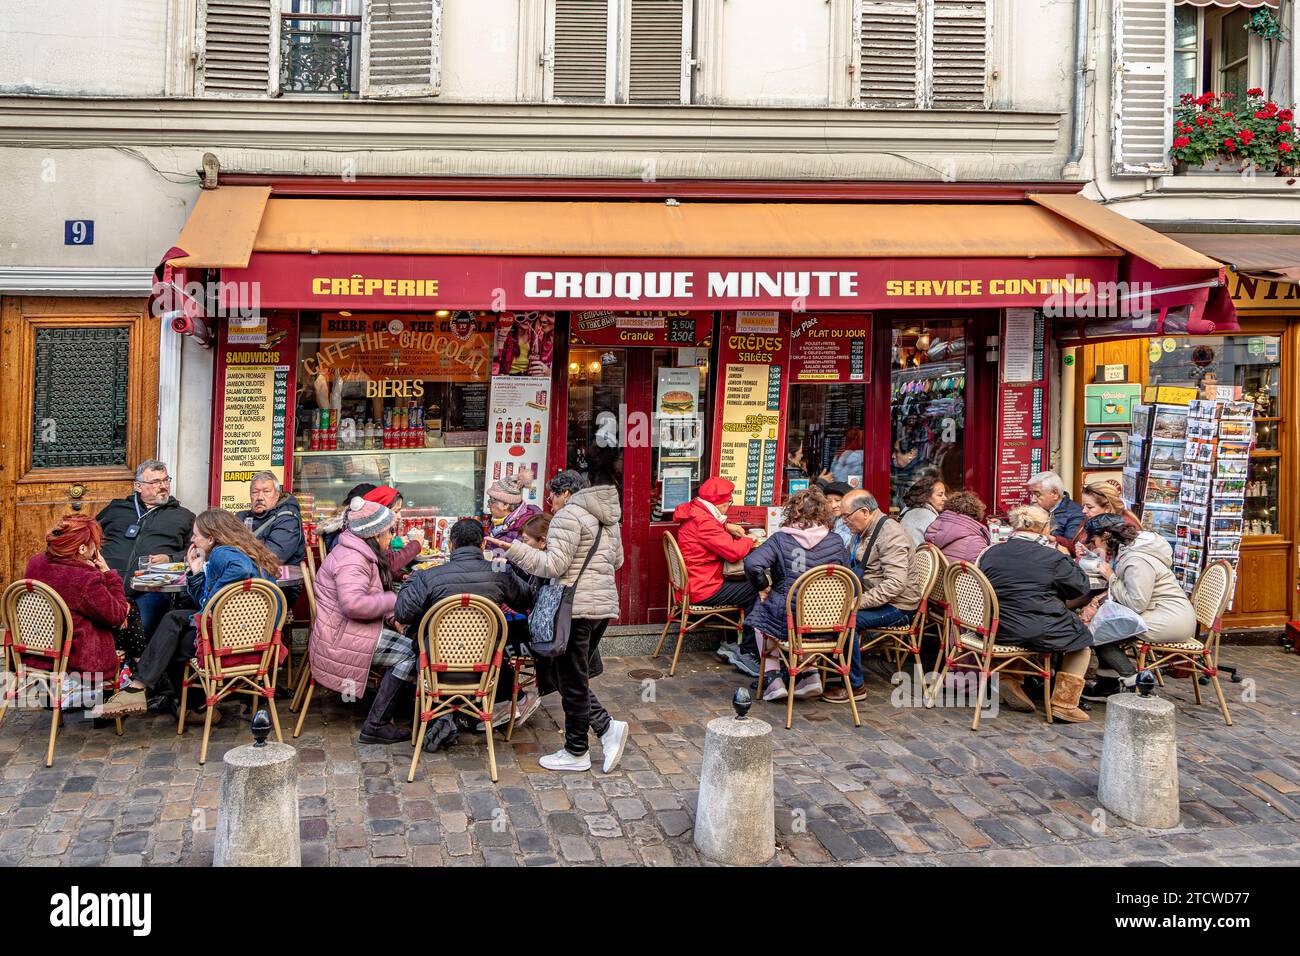 Les gens assis à déguster un repas au croque minute, un restaurant français à Montmartre dans hte 18e arronndissnt de Paris, France Banque D'Images